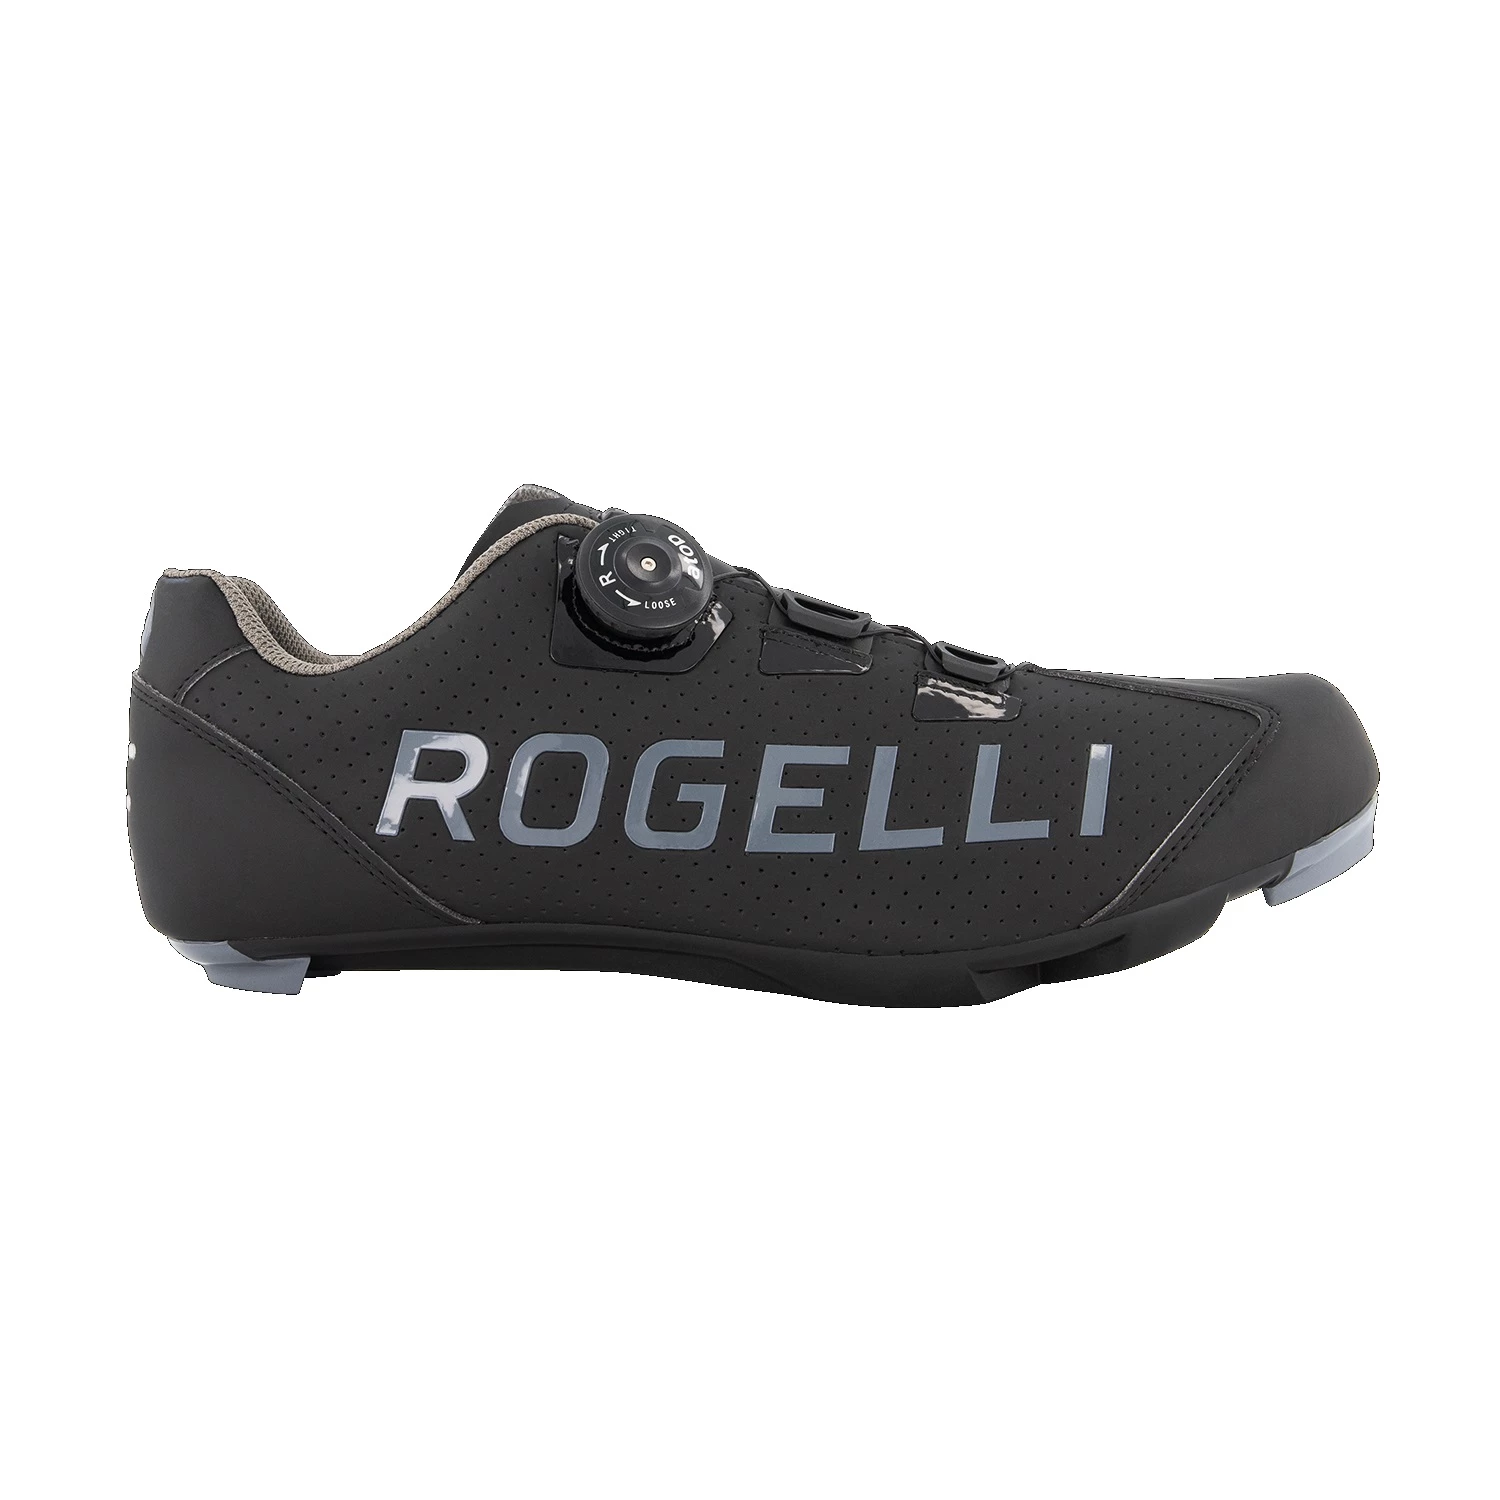 Rogelli Race Voor Spd-sl Pedaal Wielren Schoenen Zwart